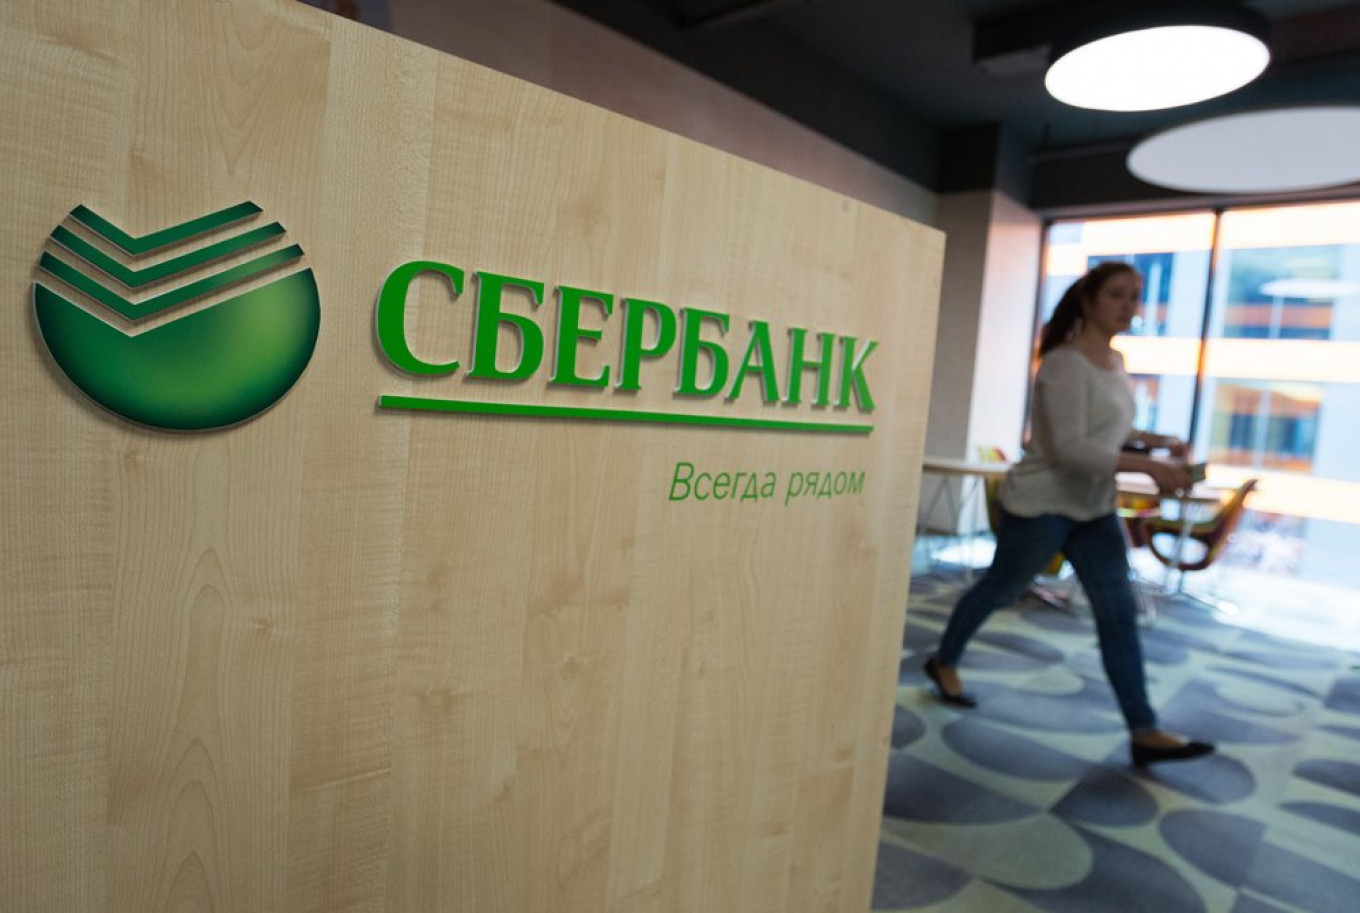 Sberbank Hit by Huge Data Breach